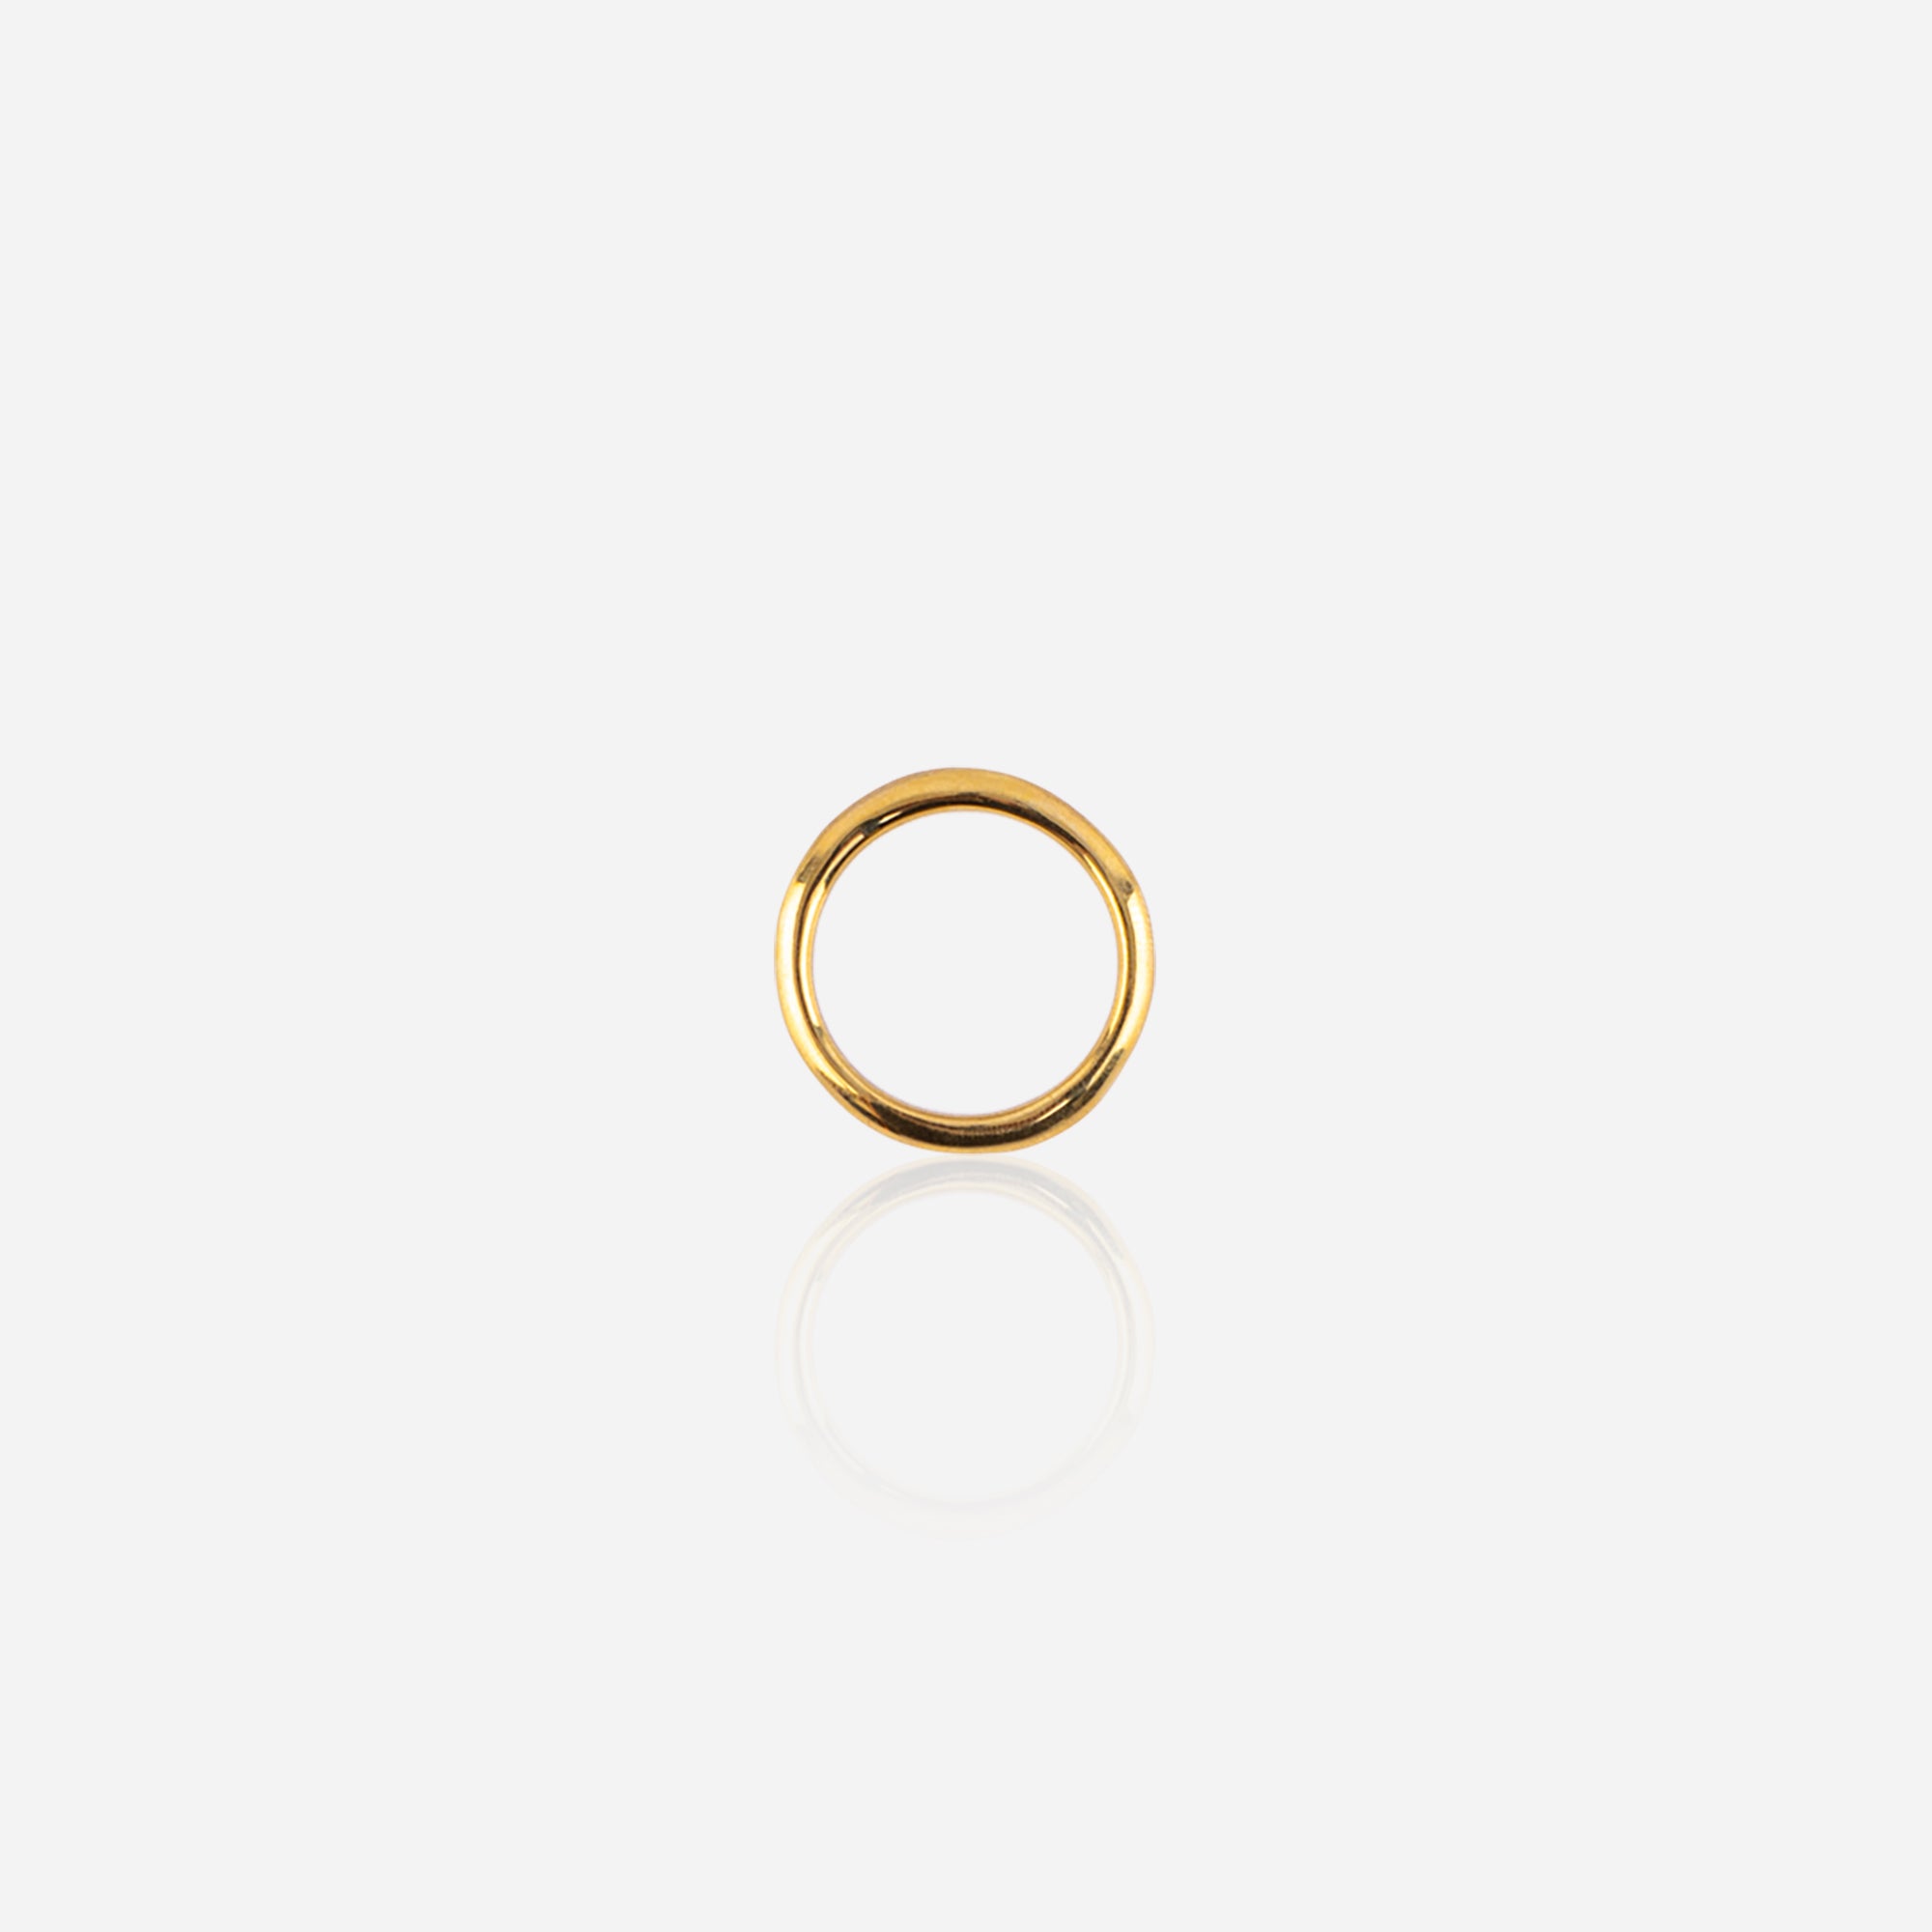 Gold limp ring